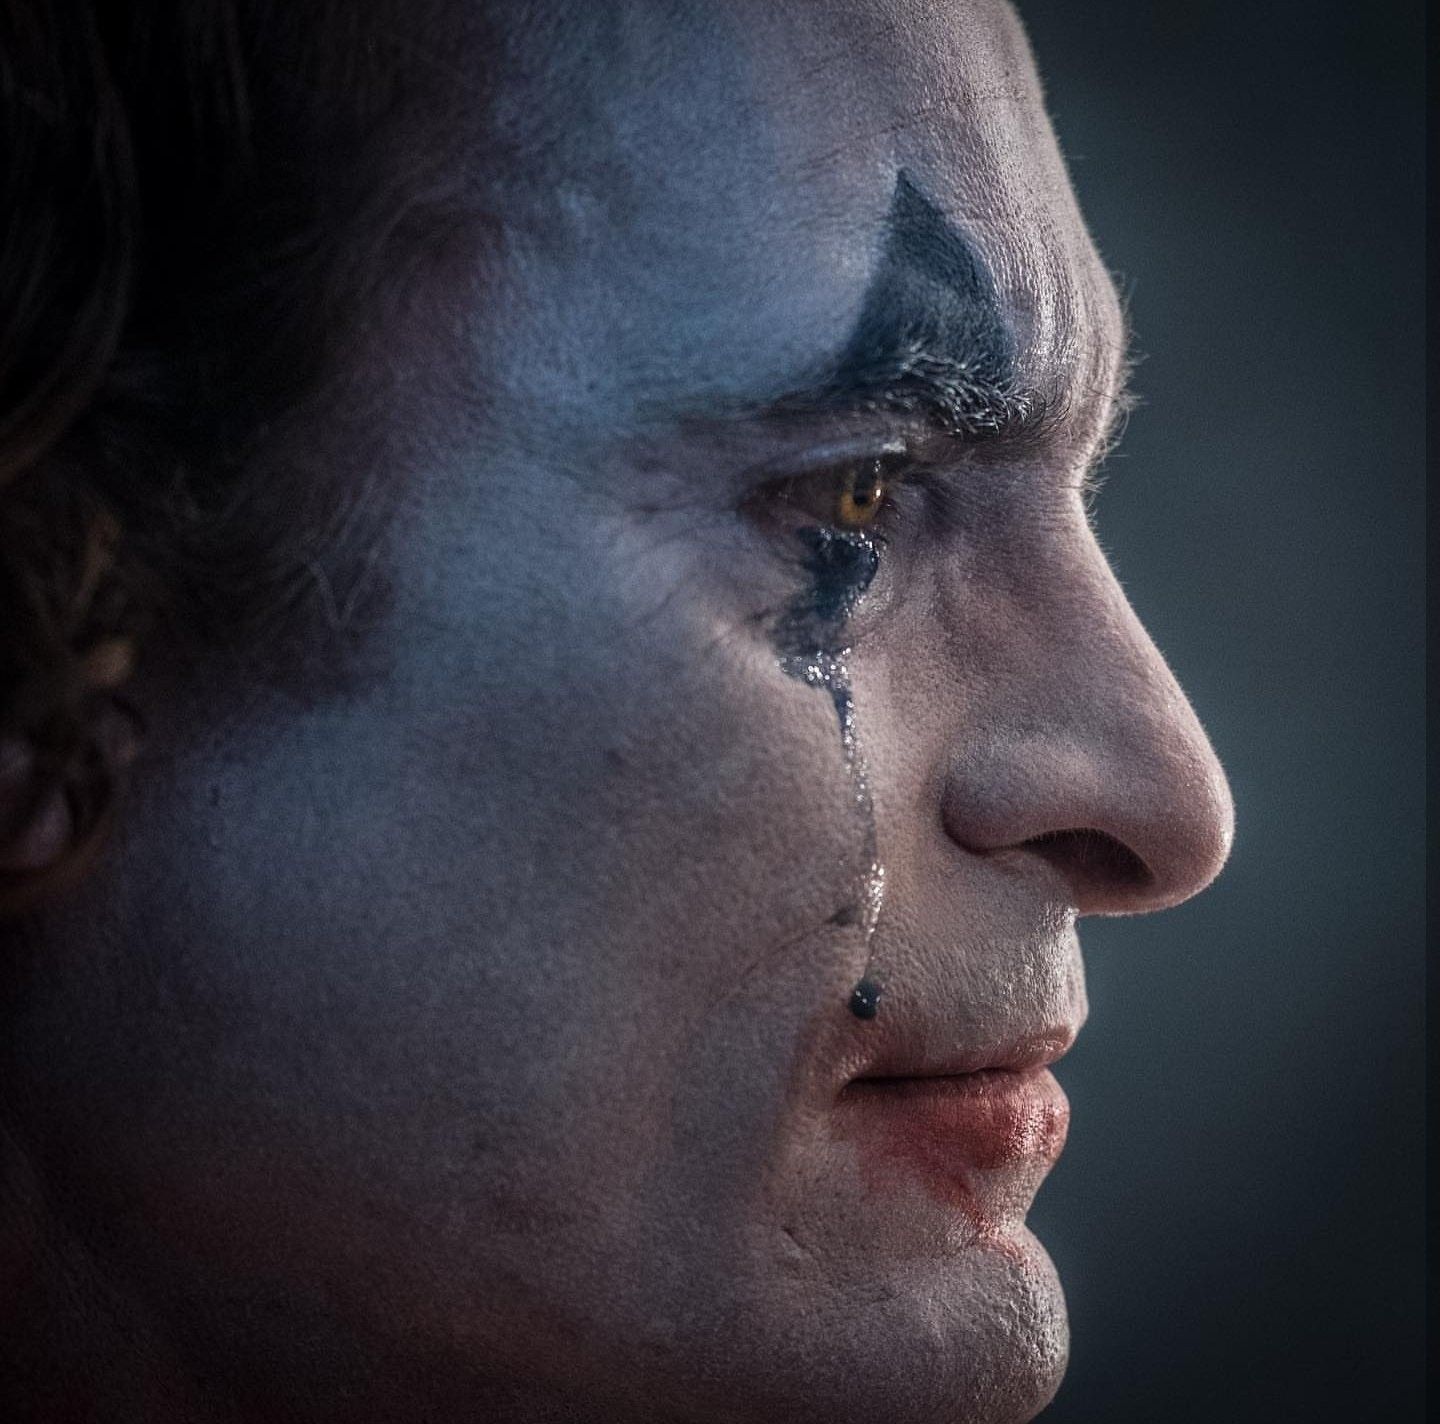 Crying clown. Fotos do joker, Cartaz coringa, Fotos coringa